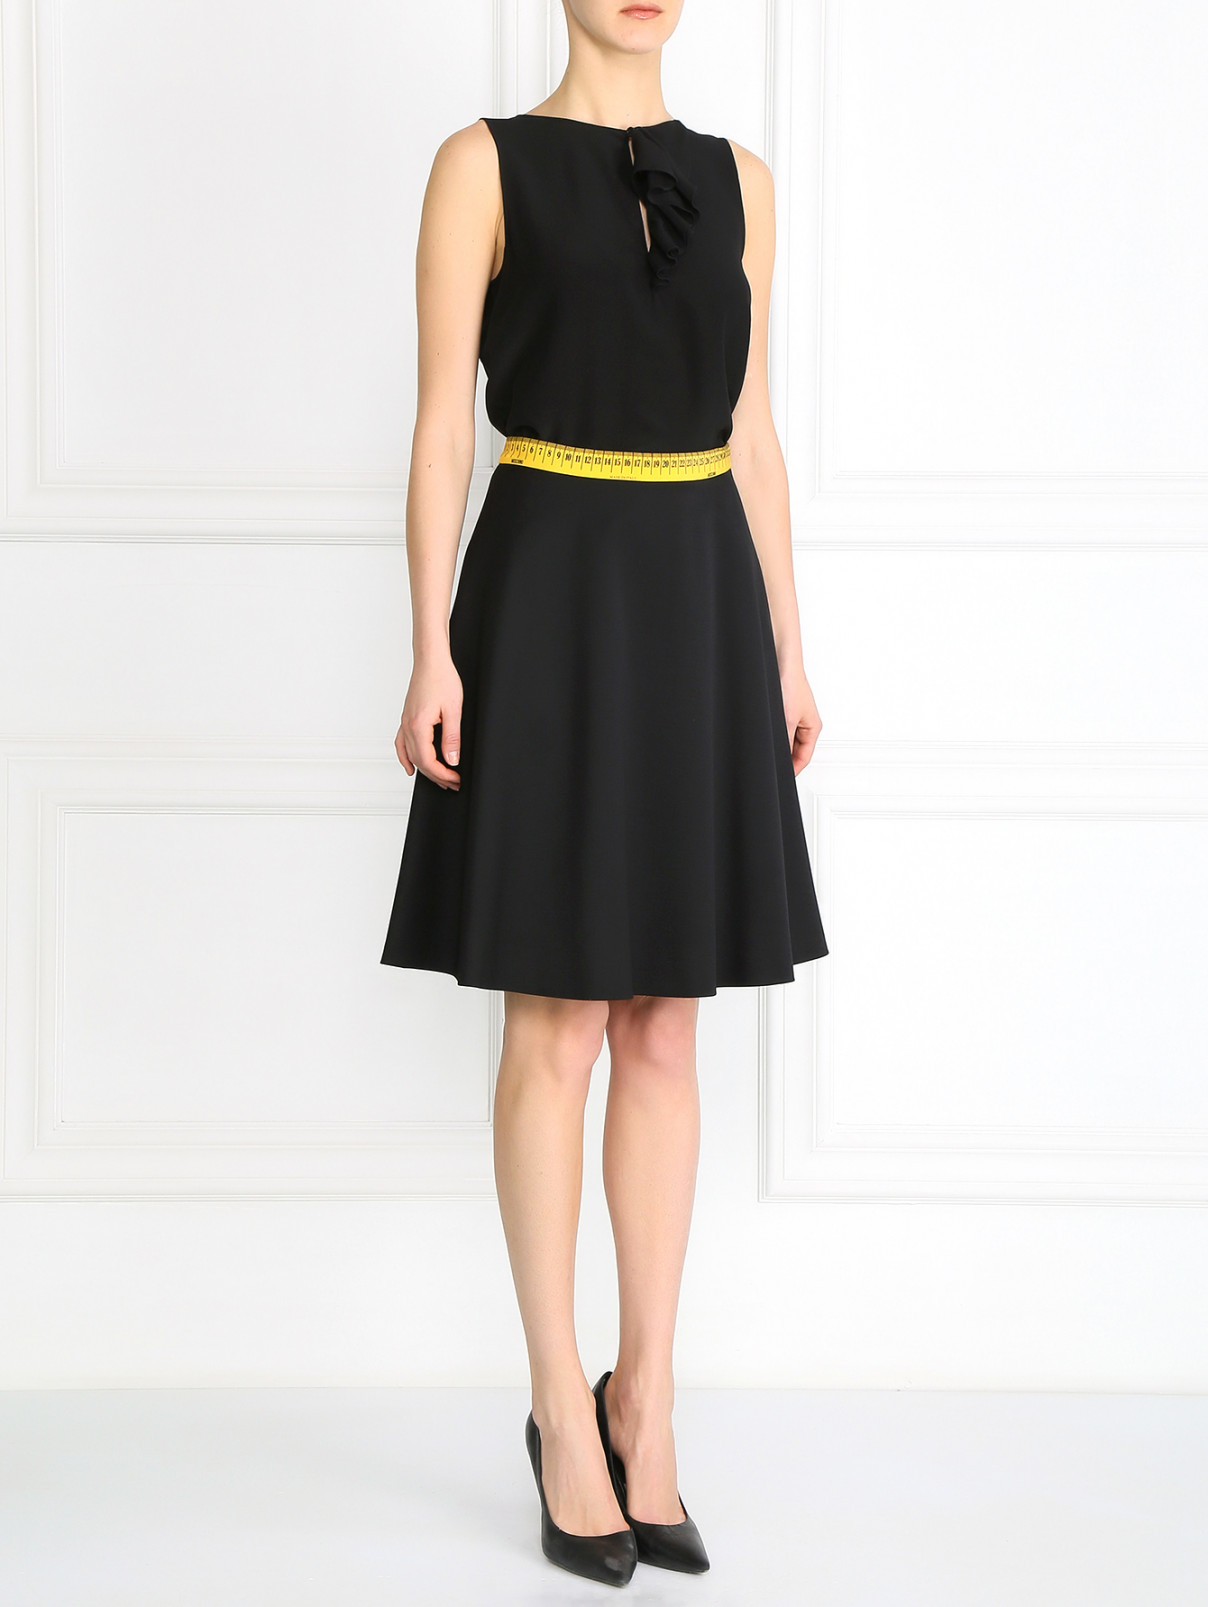 Шерстяная юбка с узором на поясе Moschino Couture  –  Модель Общий вид  – Цвет:  Черный